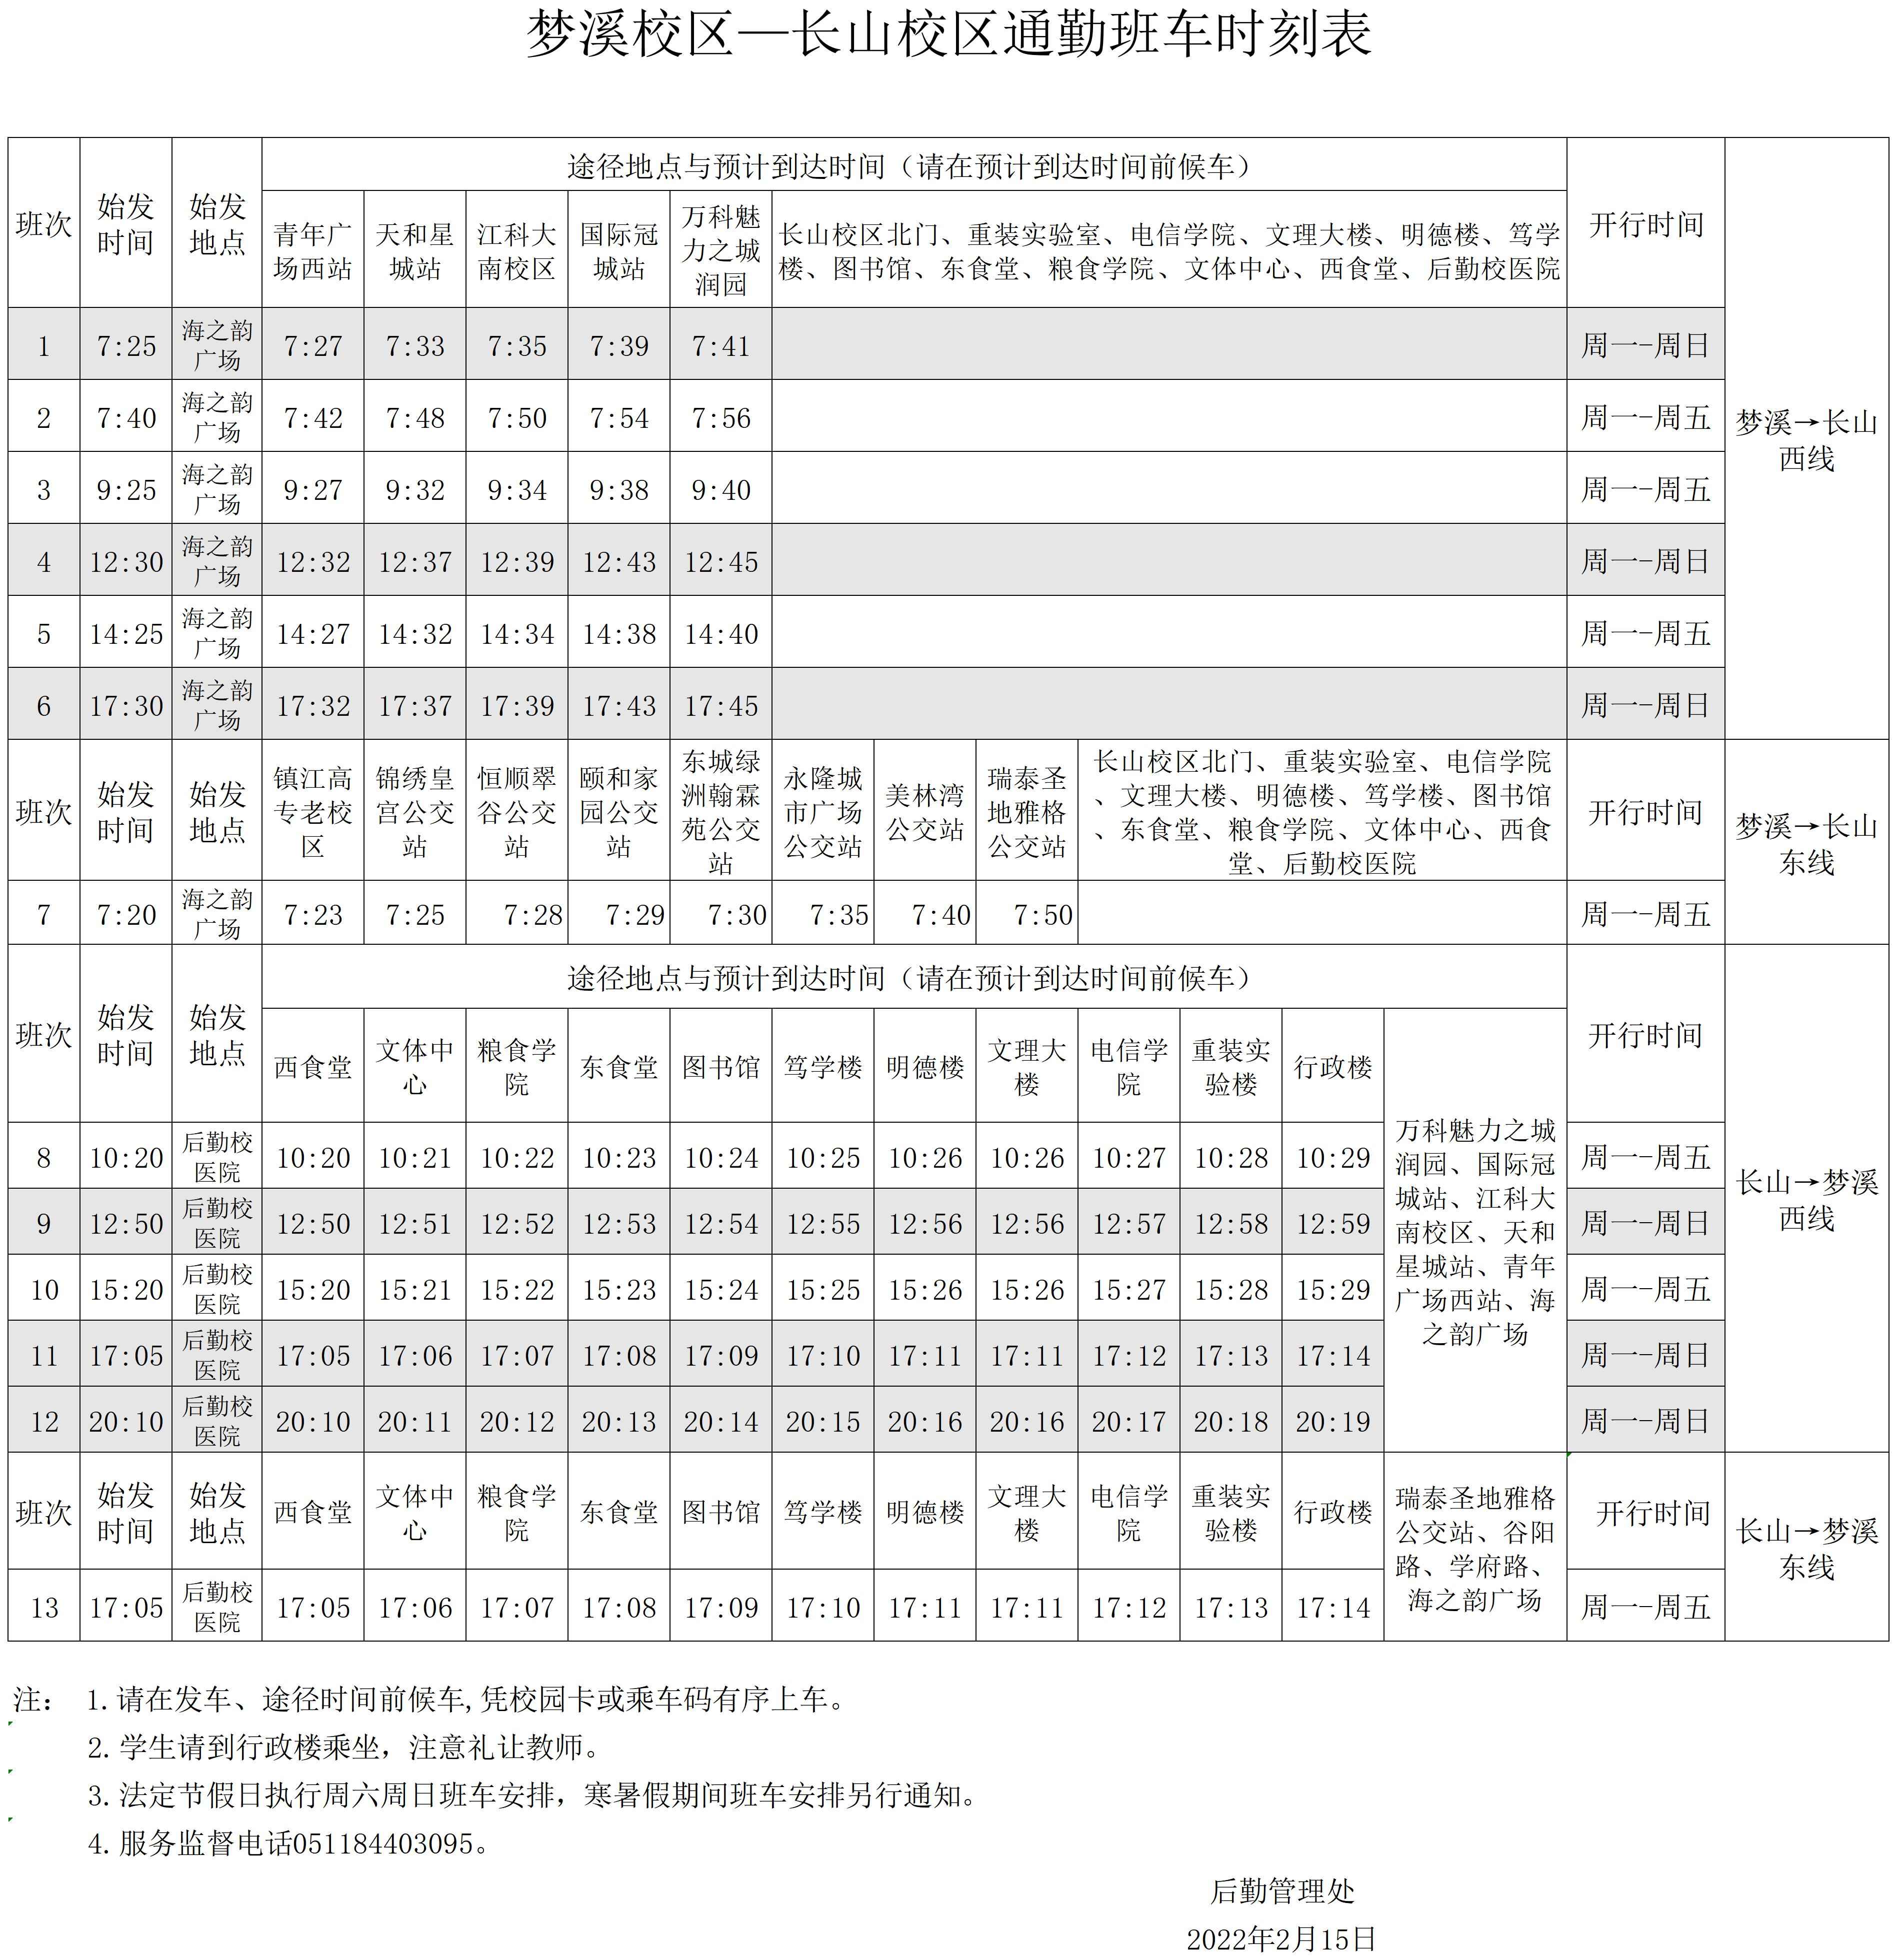 梦溪校区—长山校区通勤班车时刻表(2022.2.15）(1).jpg